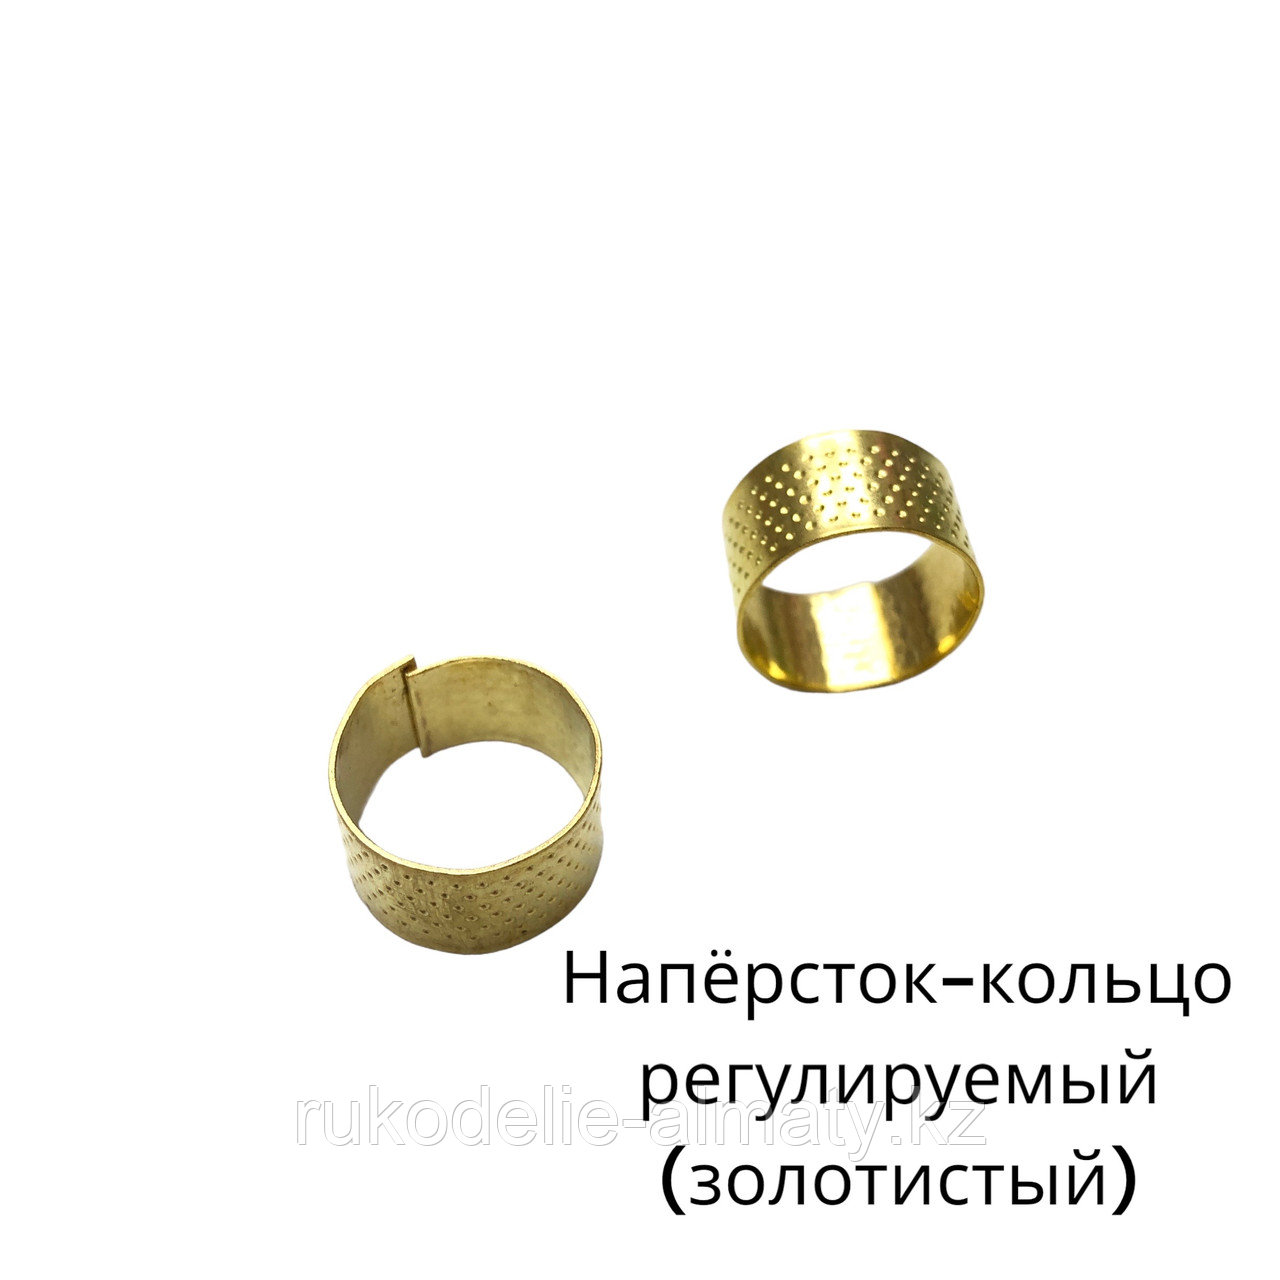 Наперсток-кольцо для шитья